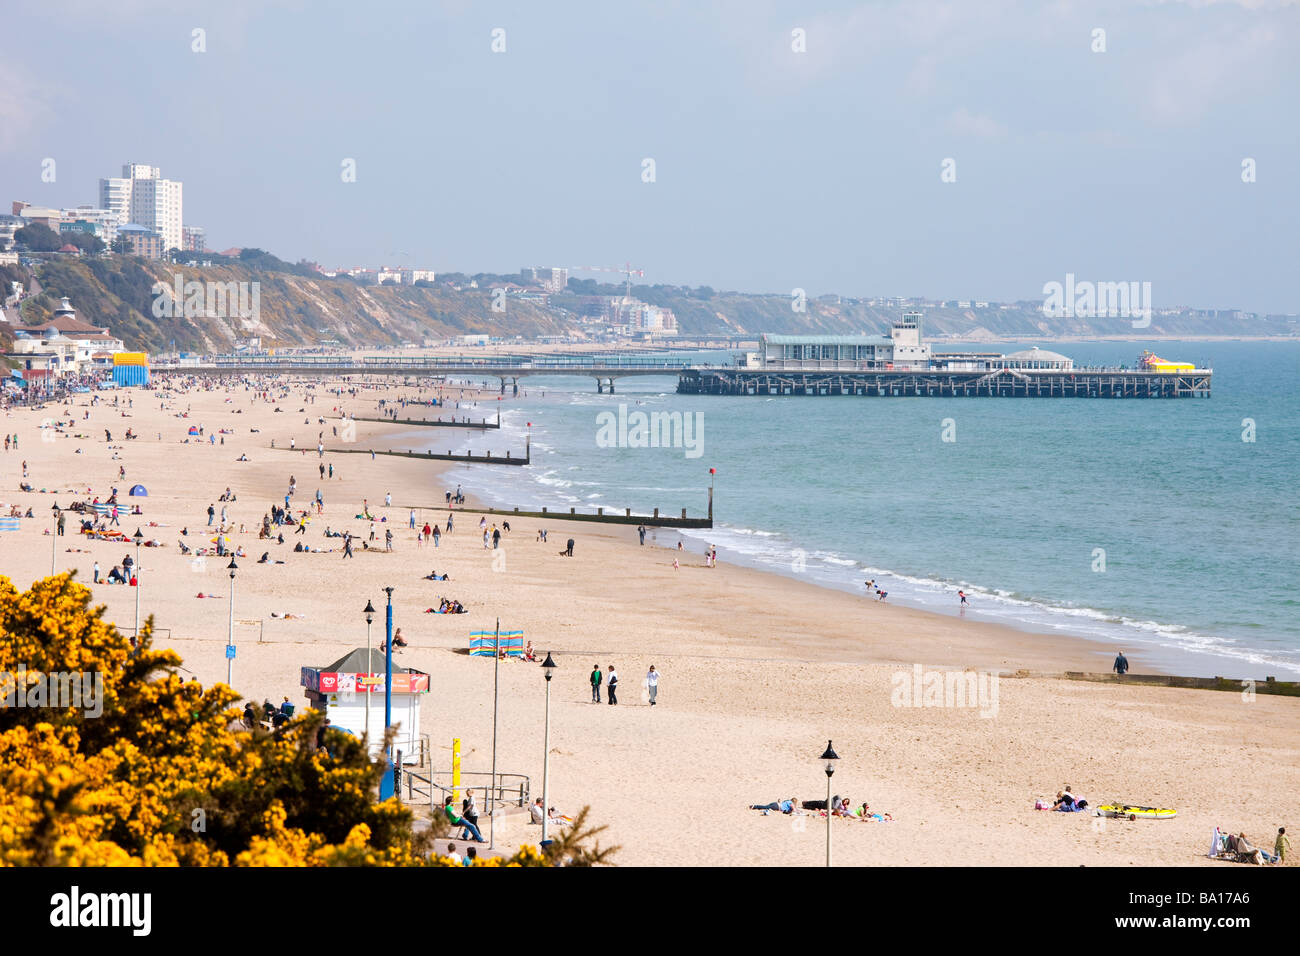 Muelle de Bournemouth y playa de arena dorada con hoteles en distancia y gente tomando sol con el cielo azul, el mar y los acantilados Foto de stock